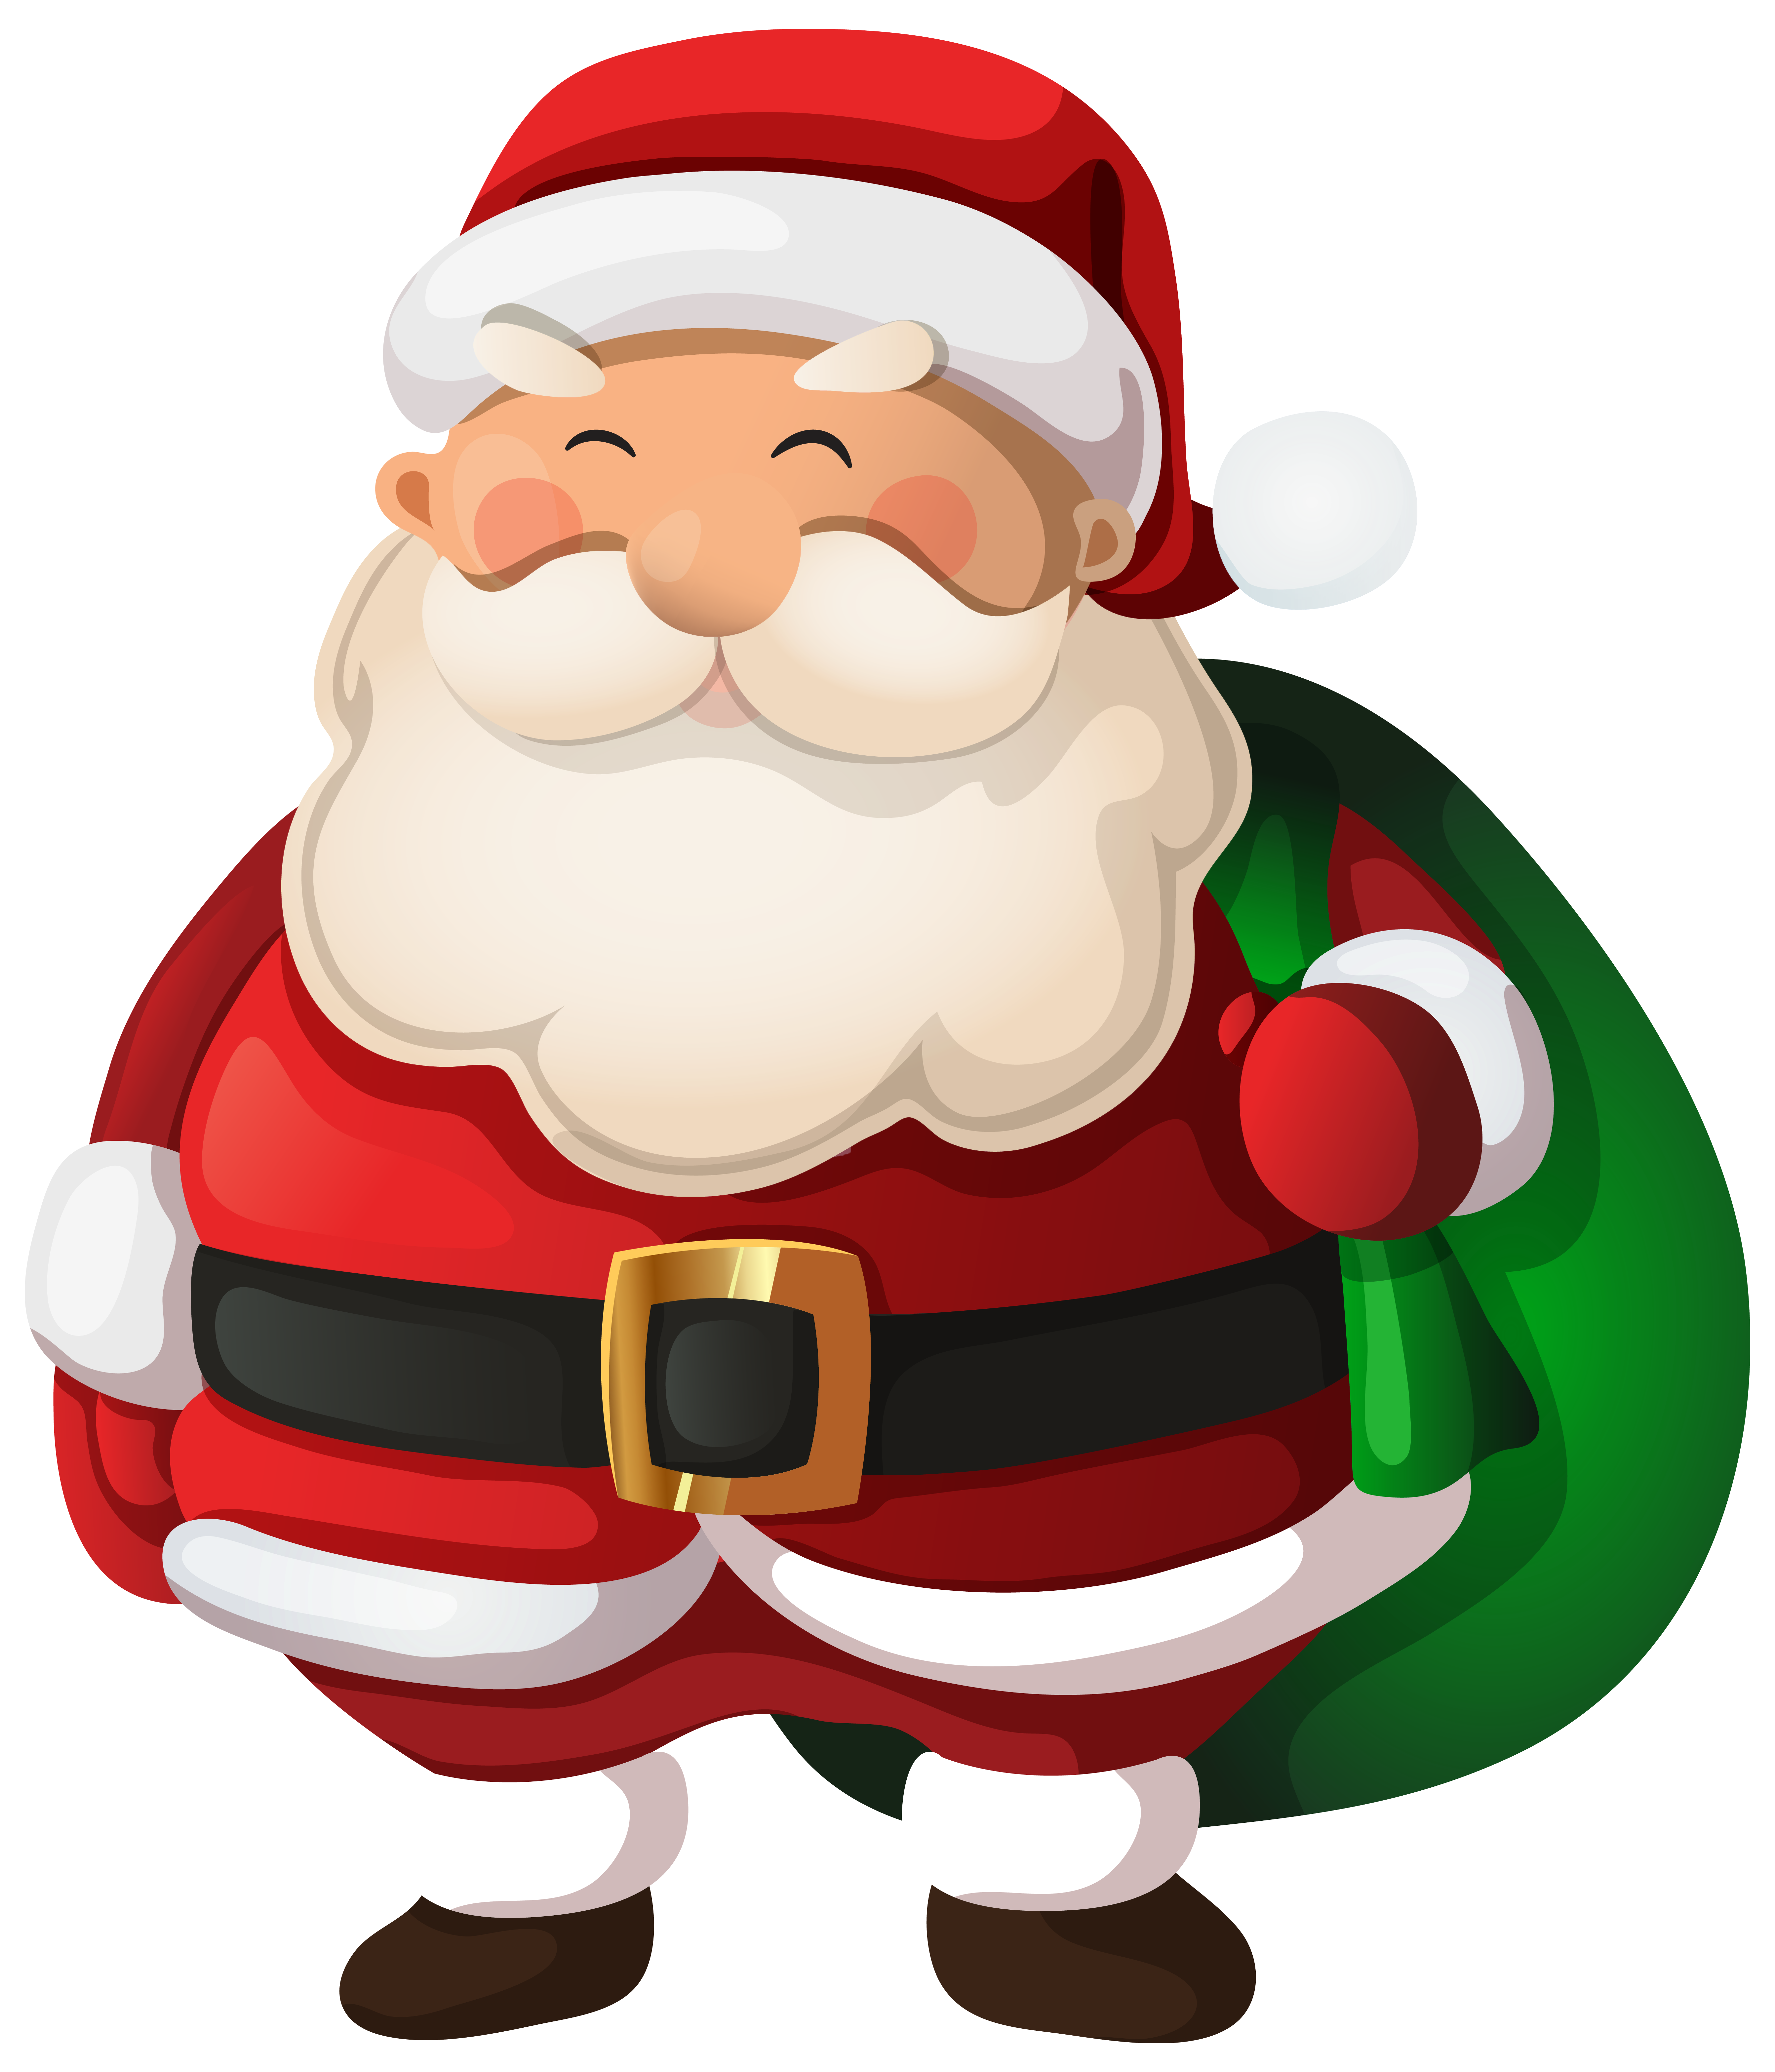 Santa Clause Clip Art u0026am - Clipart Santa Claus